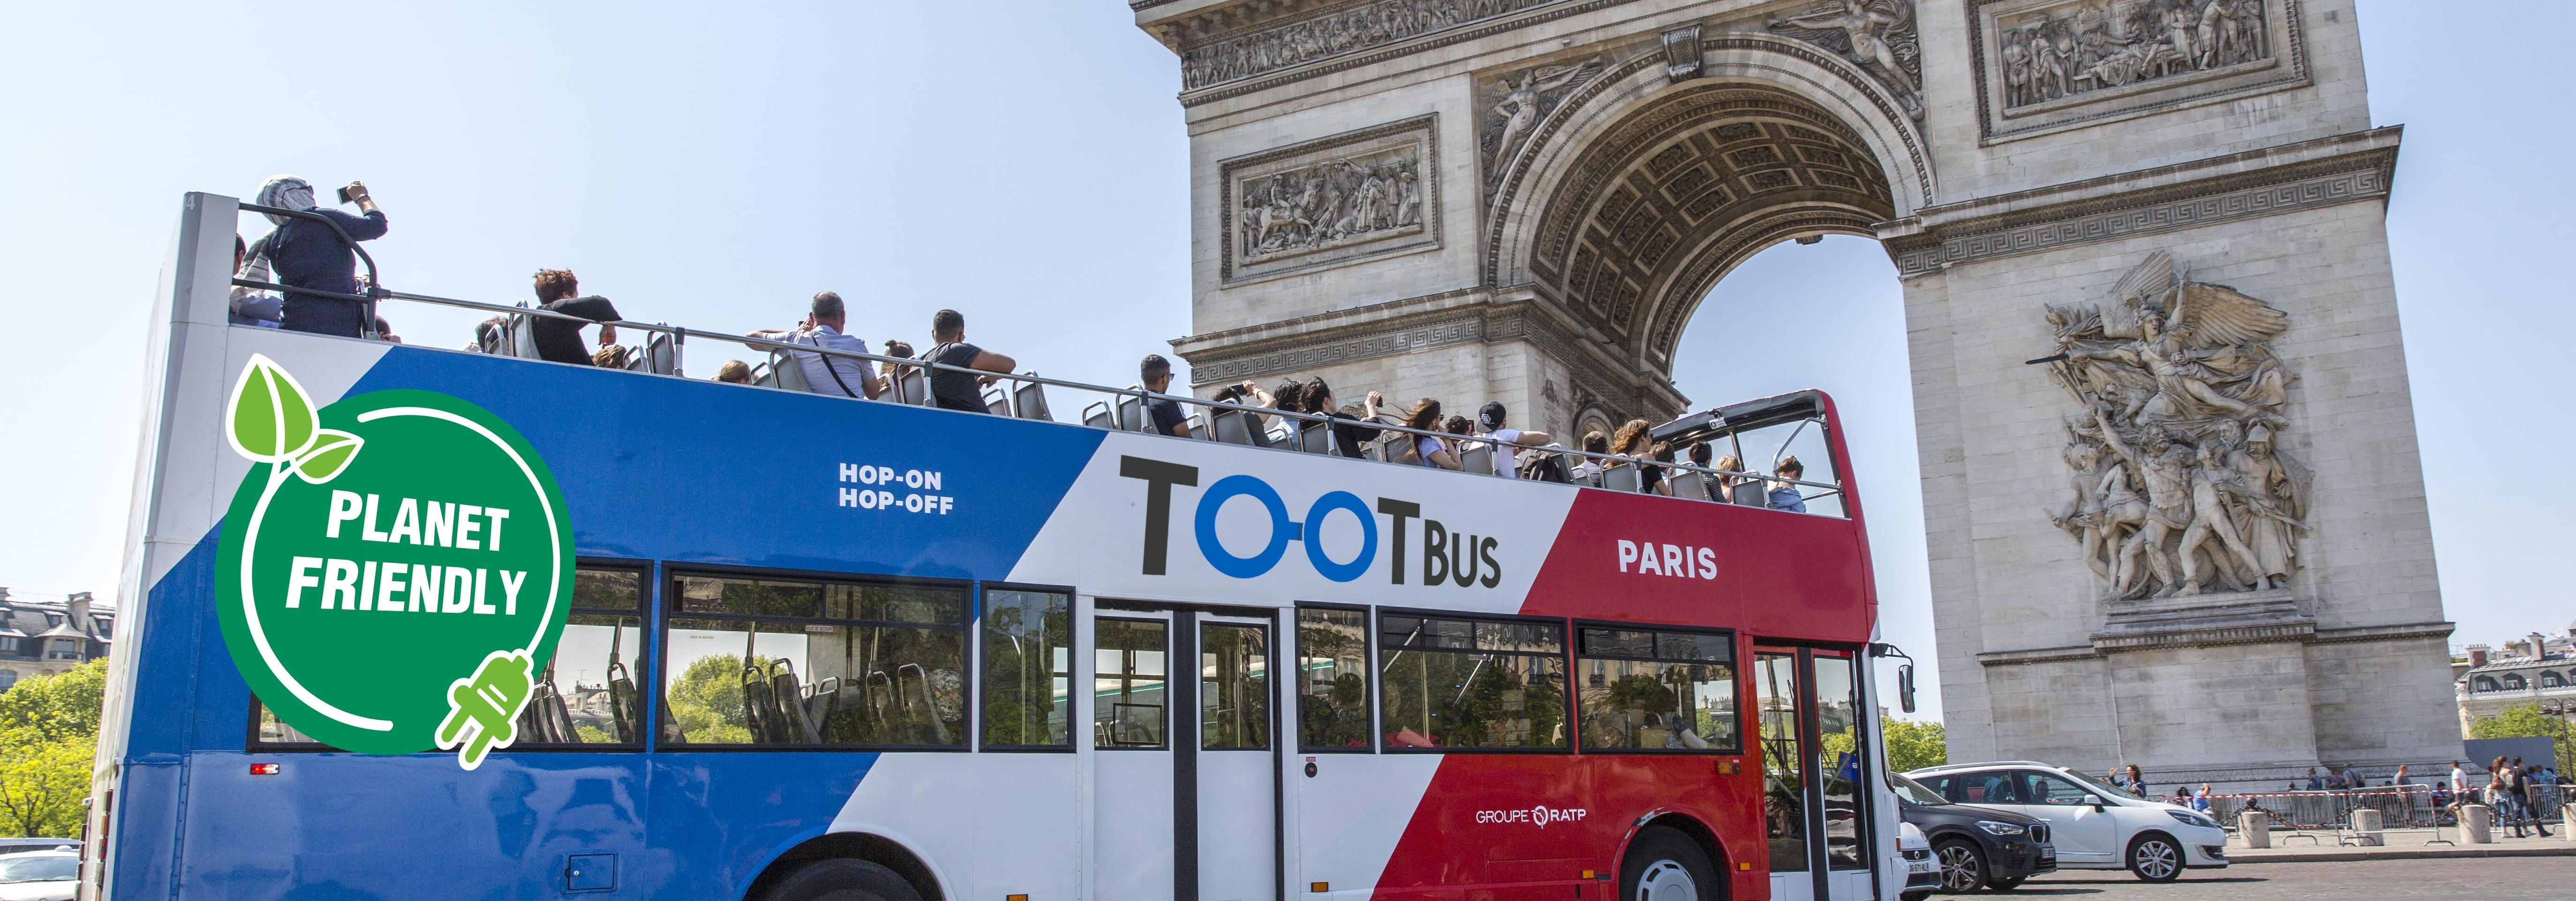 Tour de Paris en bus panoramique - Arrêts multiples - Pass 1 ou 2 jours